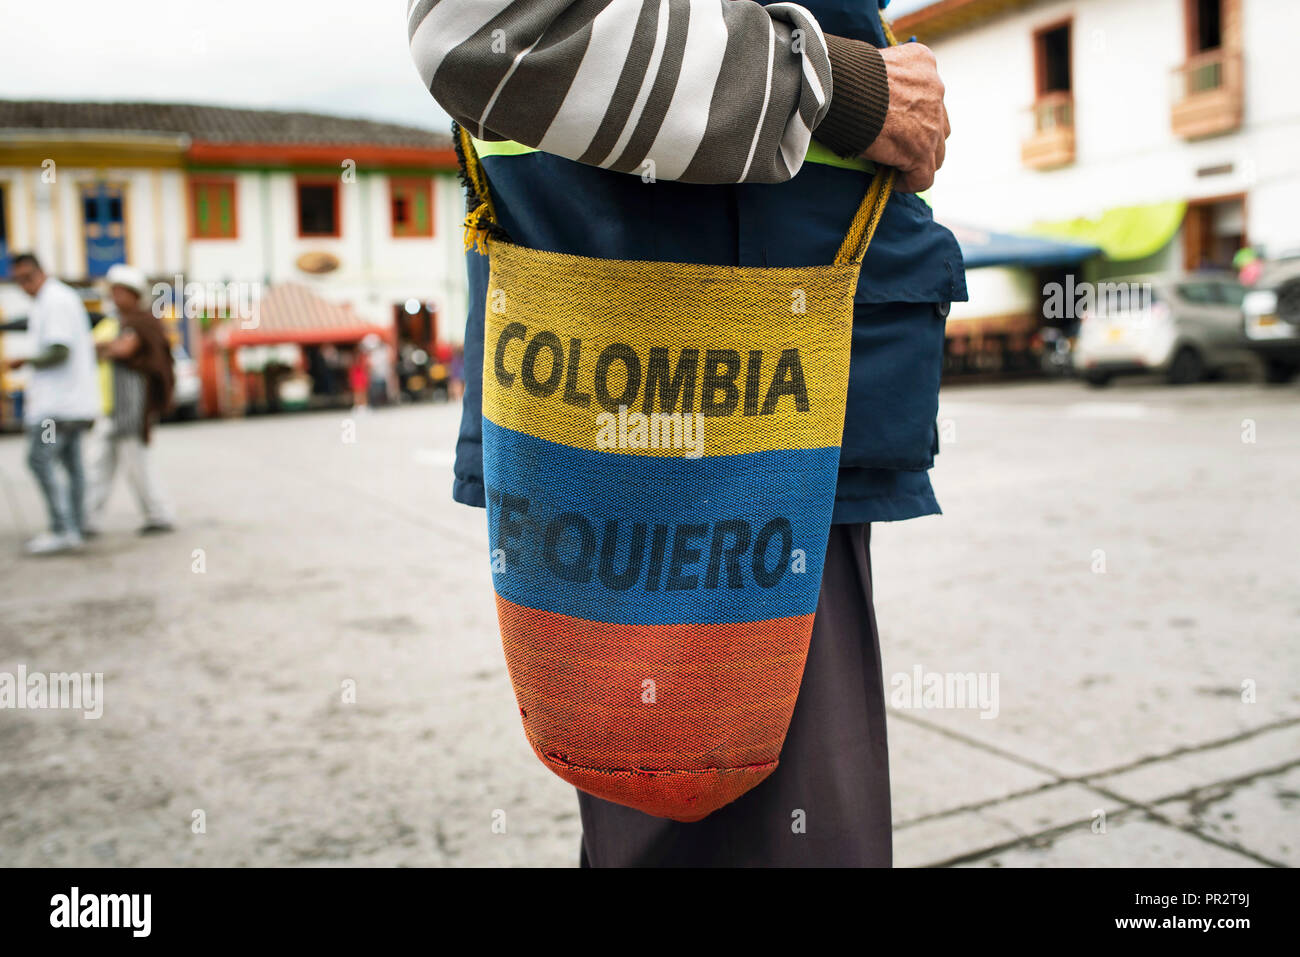 colombiano fotografías imágenes alta resolución - Alamy